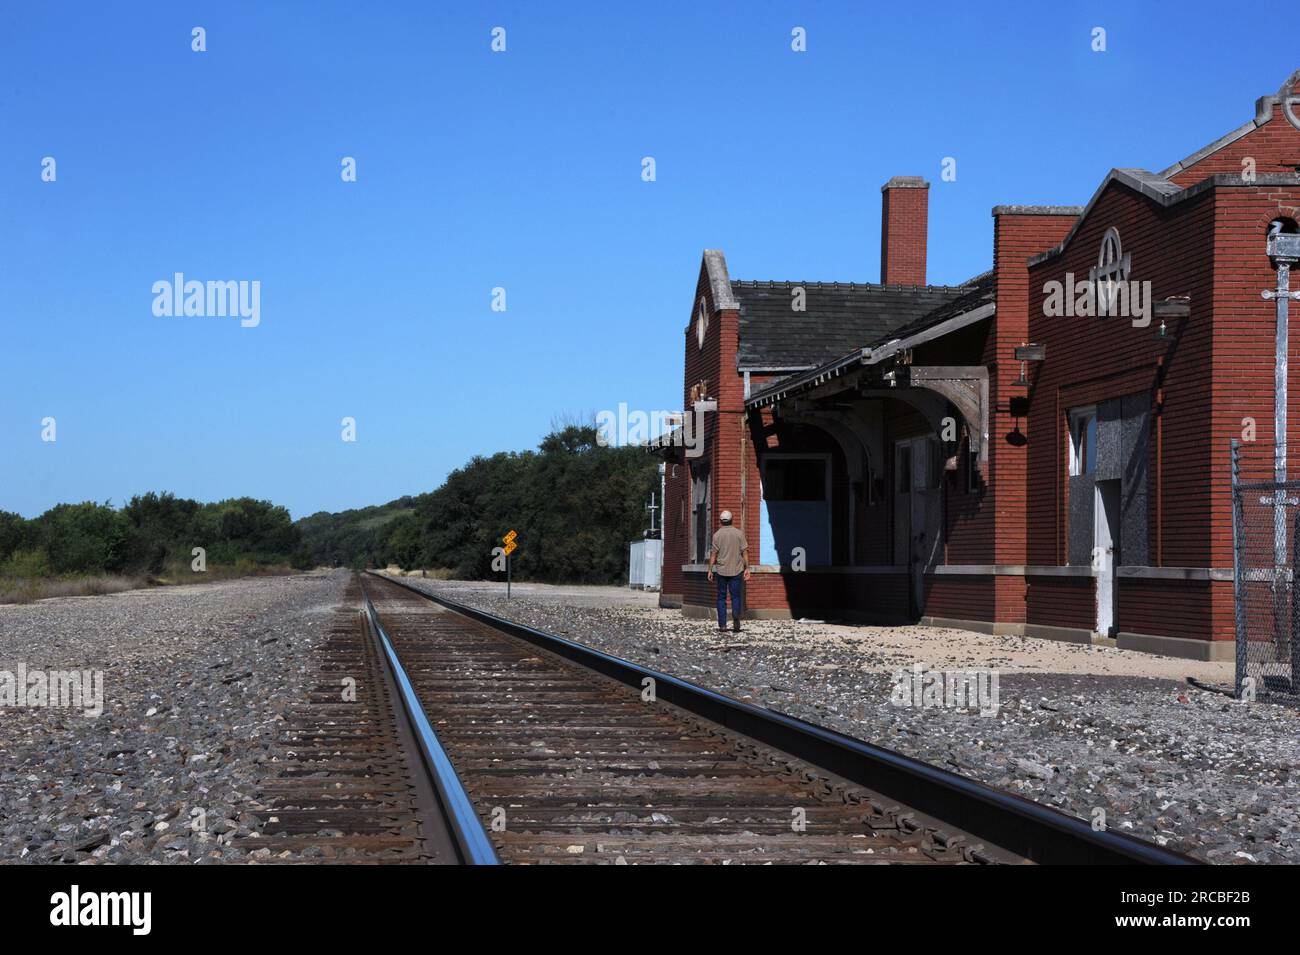 La estación de tren abandonada está en Strong City, Kansas. Antes era una parada en Atchison, Topeka y Santa Fe Railroad. El visitante admira el artesano americano Foto de stock